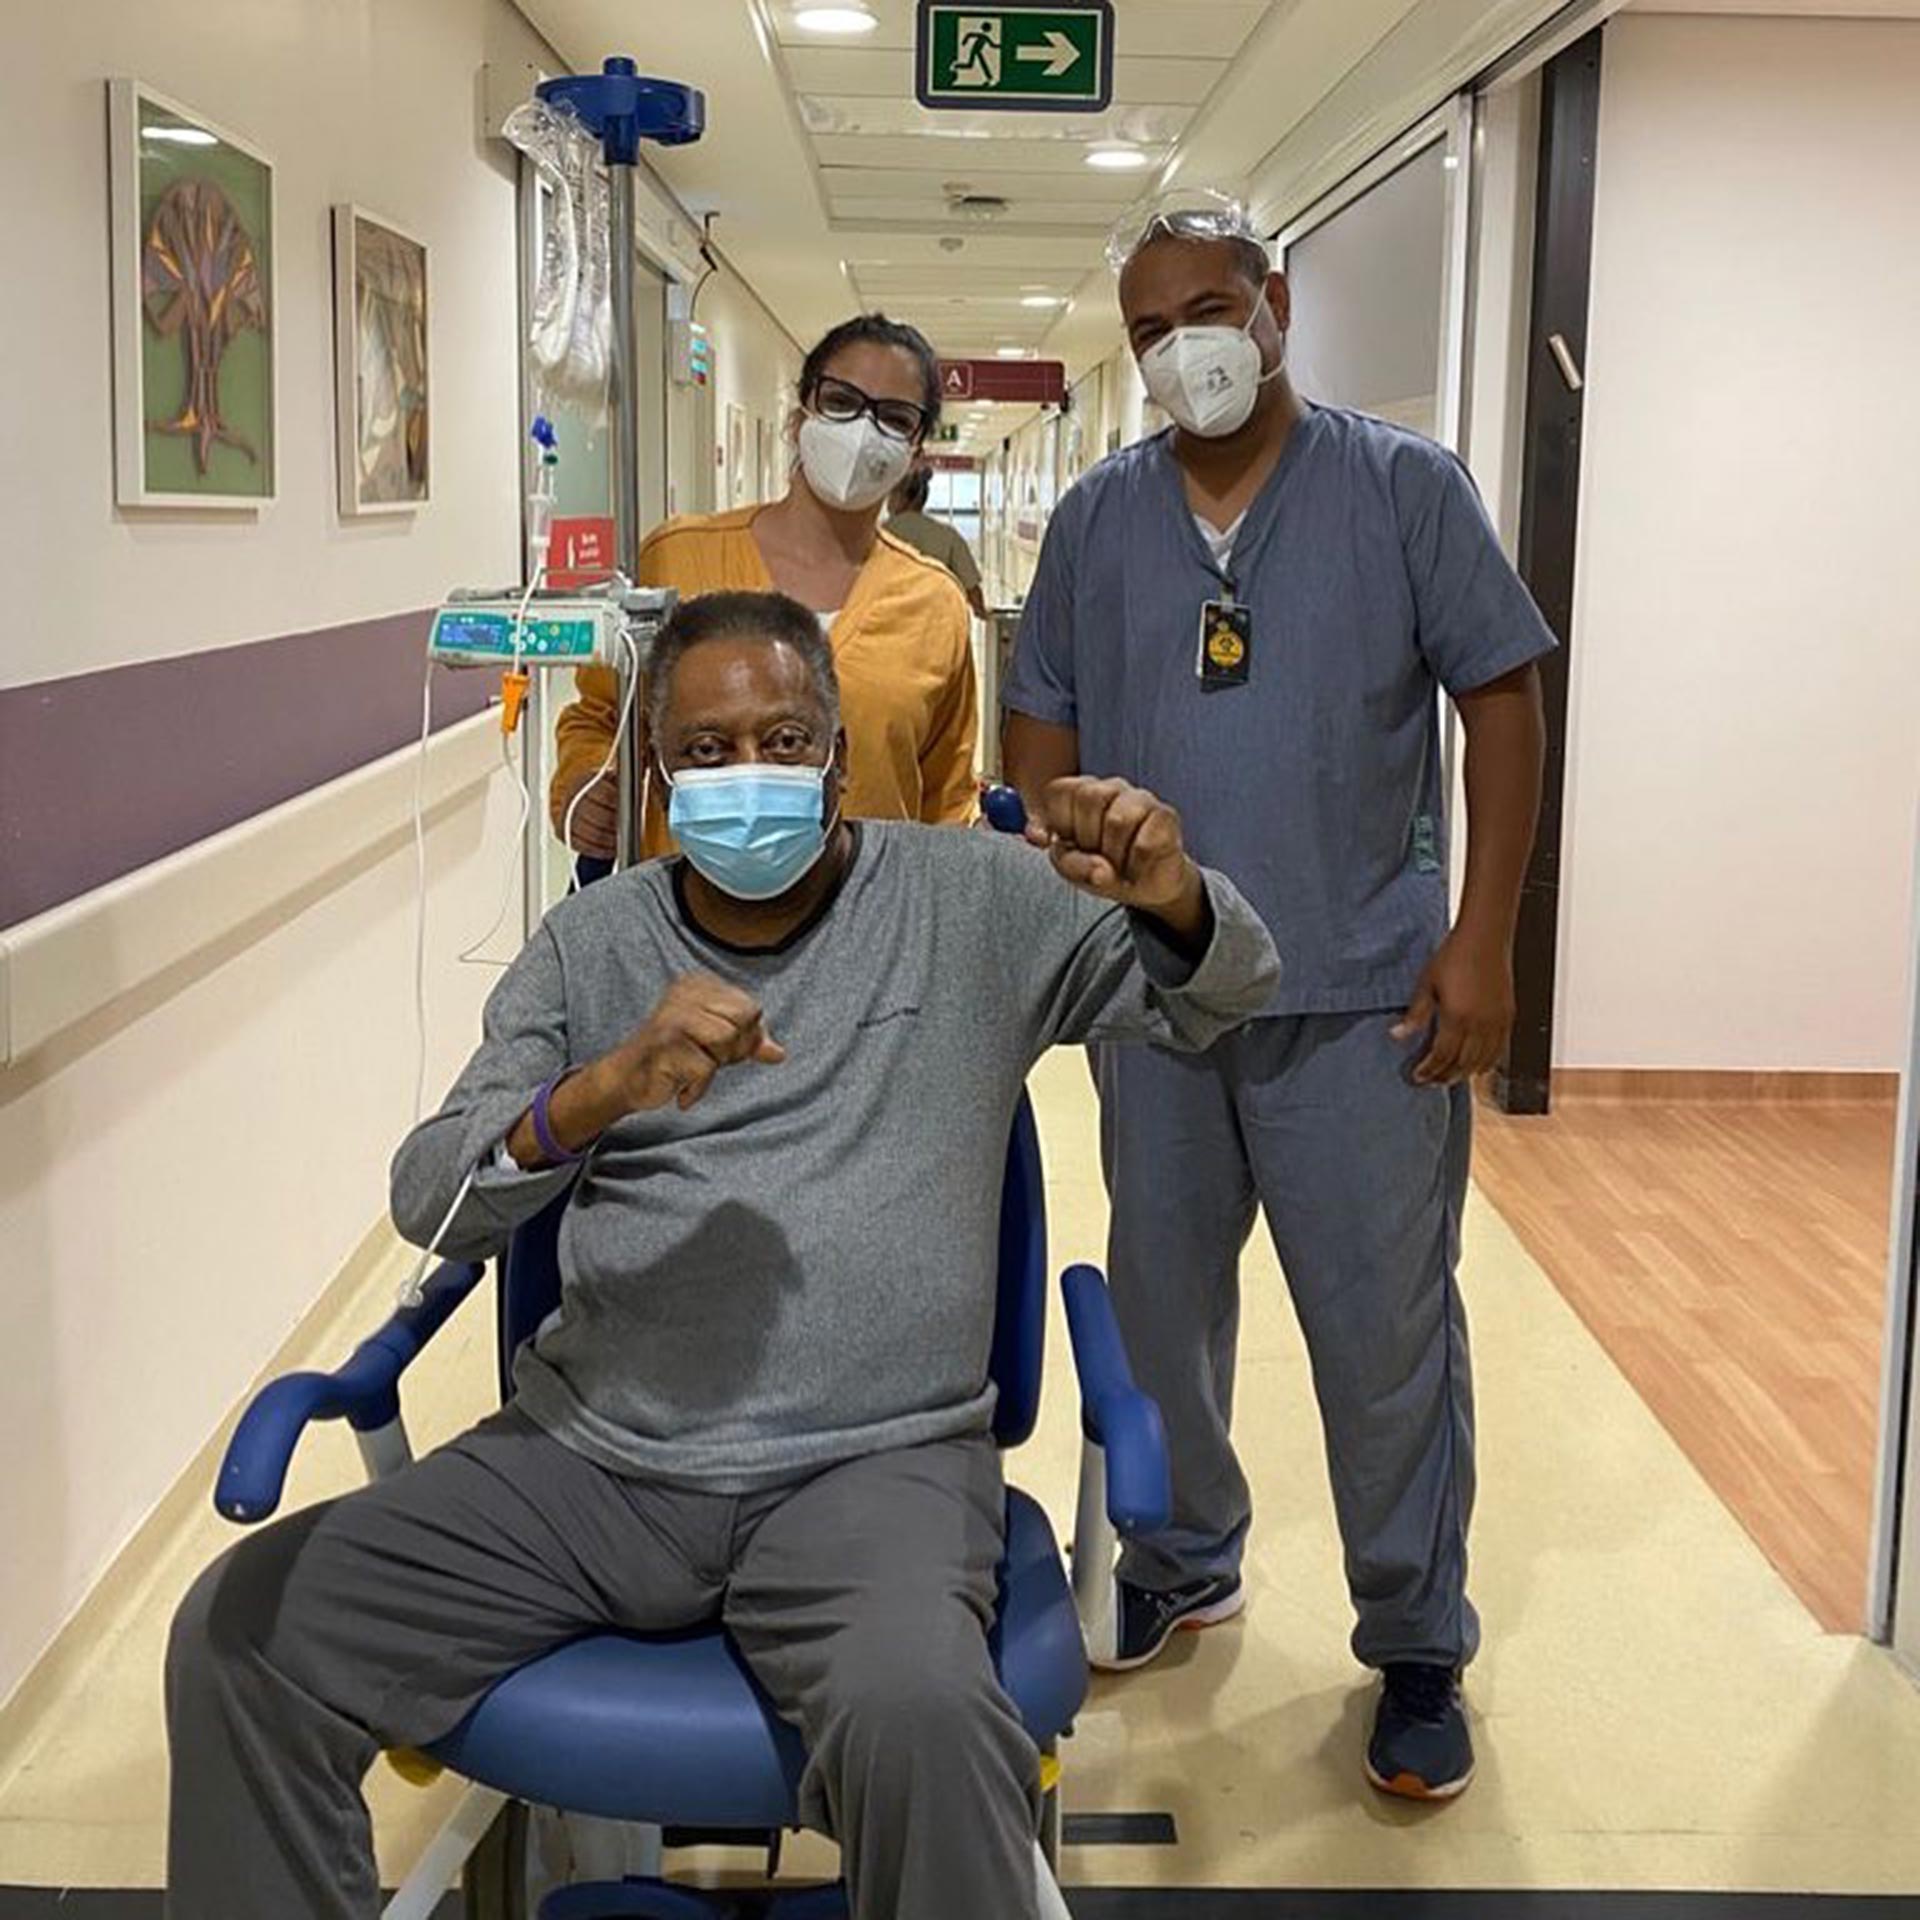 La salud de Pelé: su estado mejoró y esperan que pronto pueda abandonar el  hospital - Infobae